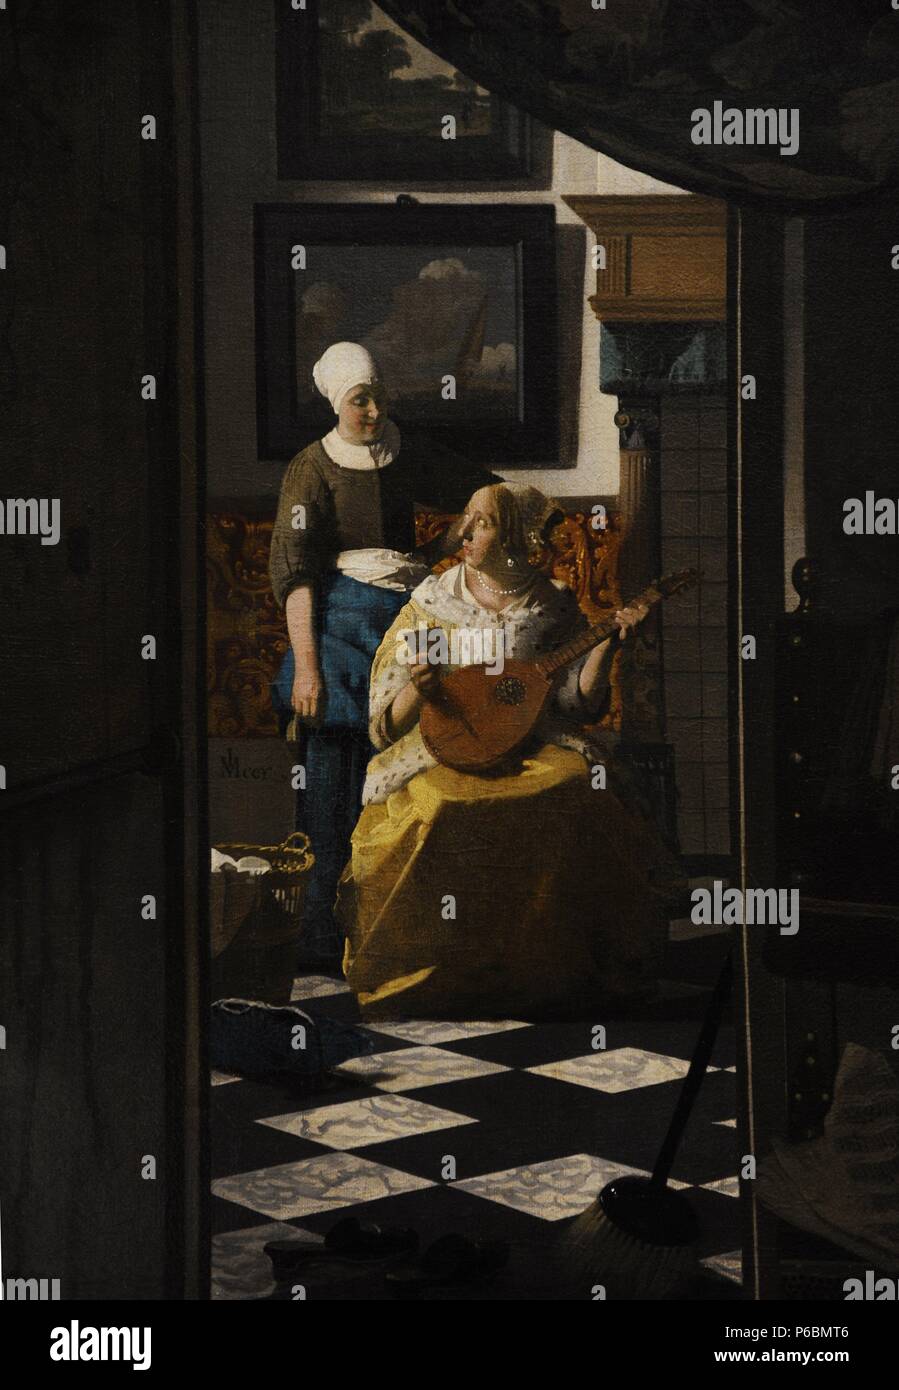 Johannes Vermeer (1632-1675). Niederländischer Maler. Der Liebesbrief, c. 1669-1670. Rijskmuseum. Amsterdam. Niederlande. Stockfoto